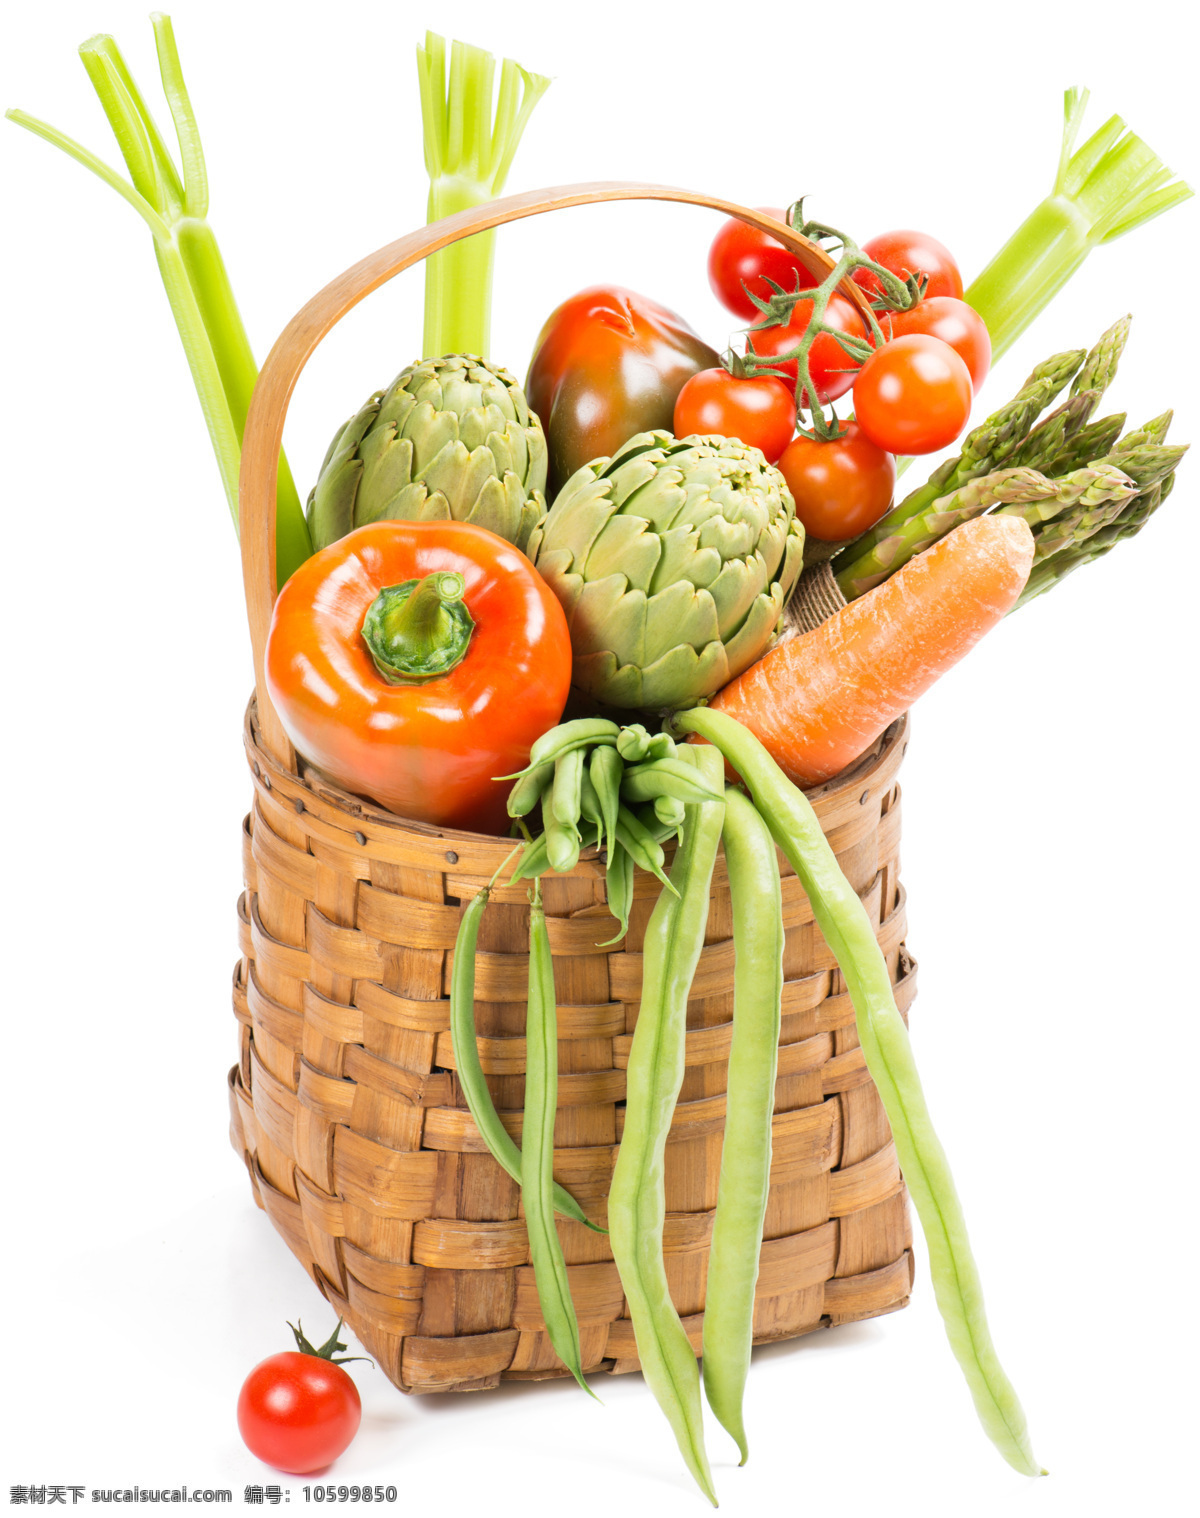 竹篮 里 新鲜 蔬菜 篮子 番茄 辣椒 胡萝卜 蔬菜图片 餐饮美食